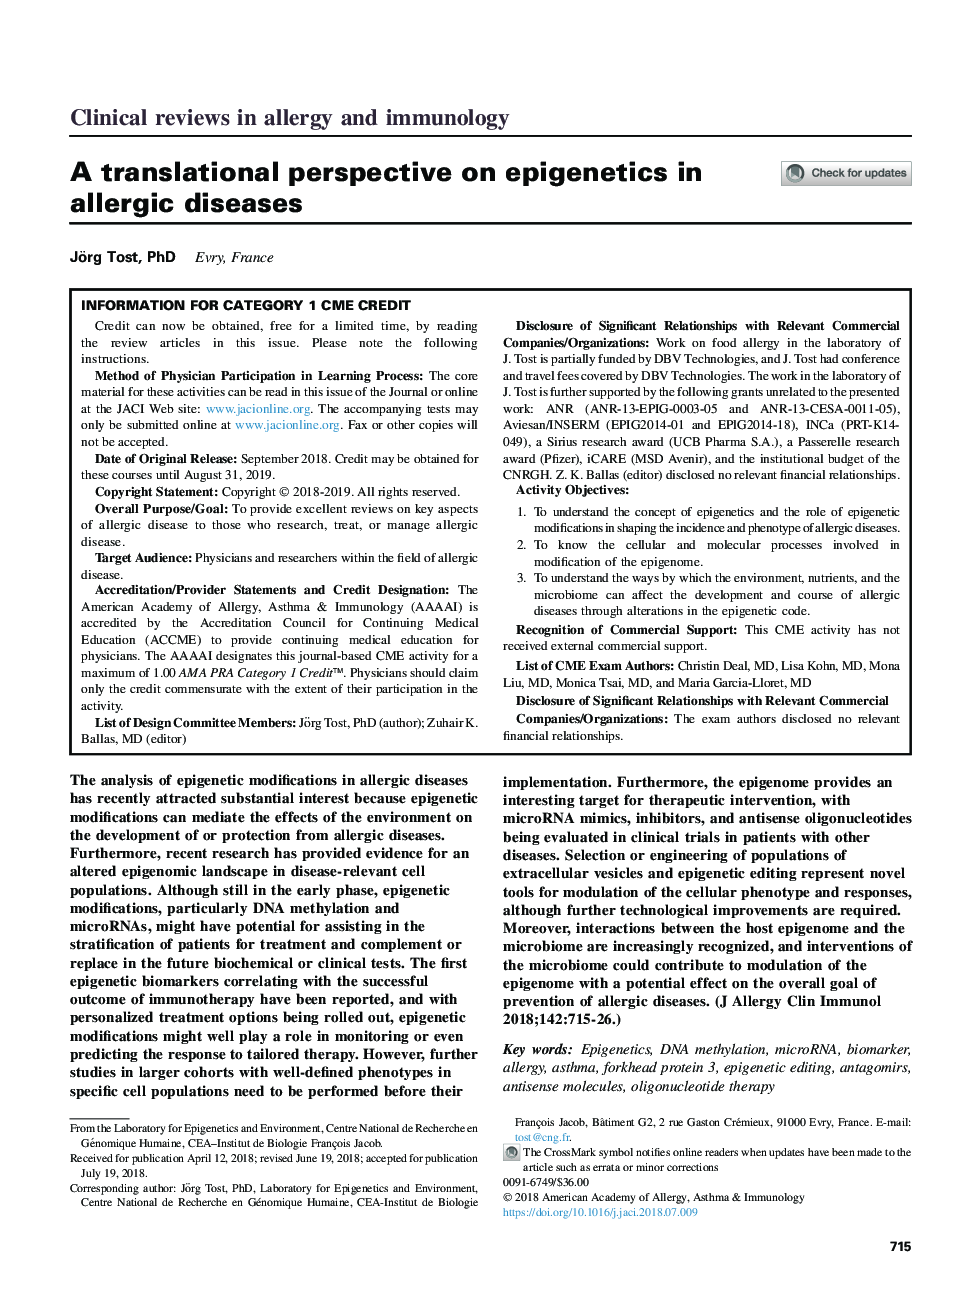 چشم انداز ترجمه ای در مورد اپی ژنتیک در بیماری های آلرژیک